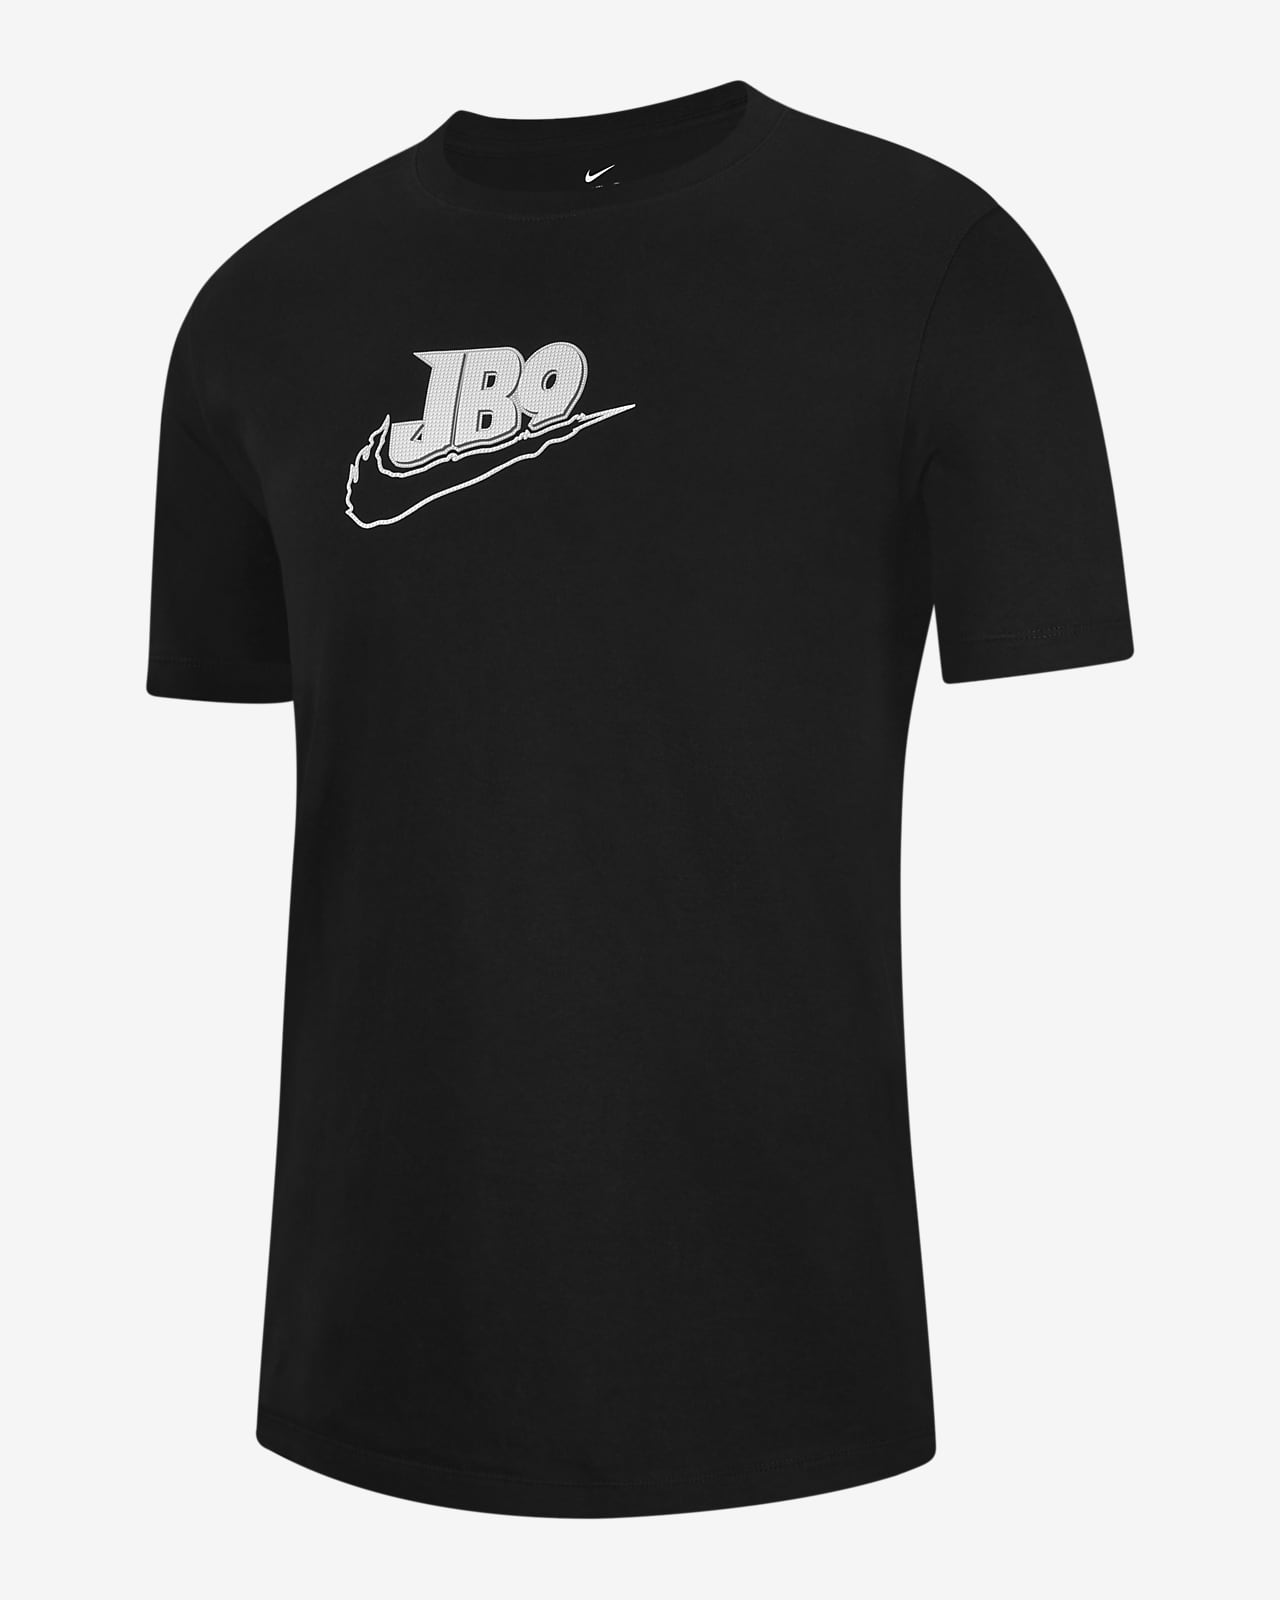 Joe Burrow Men's T-Shirt